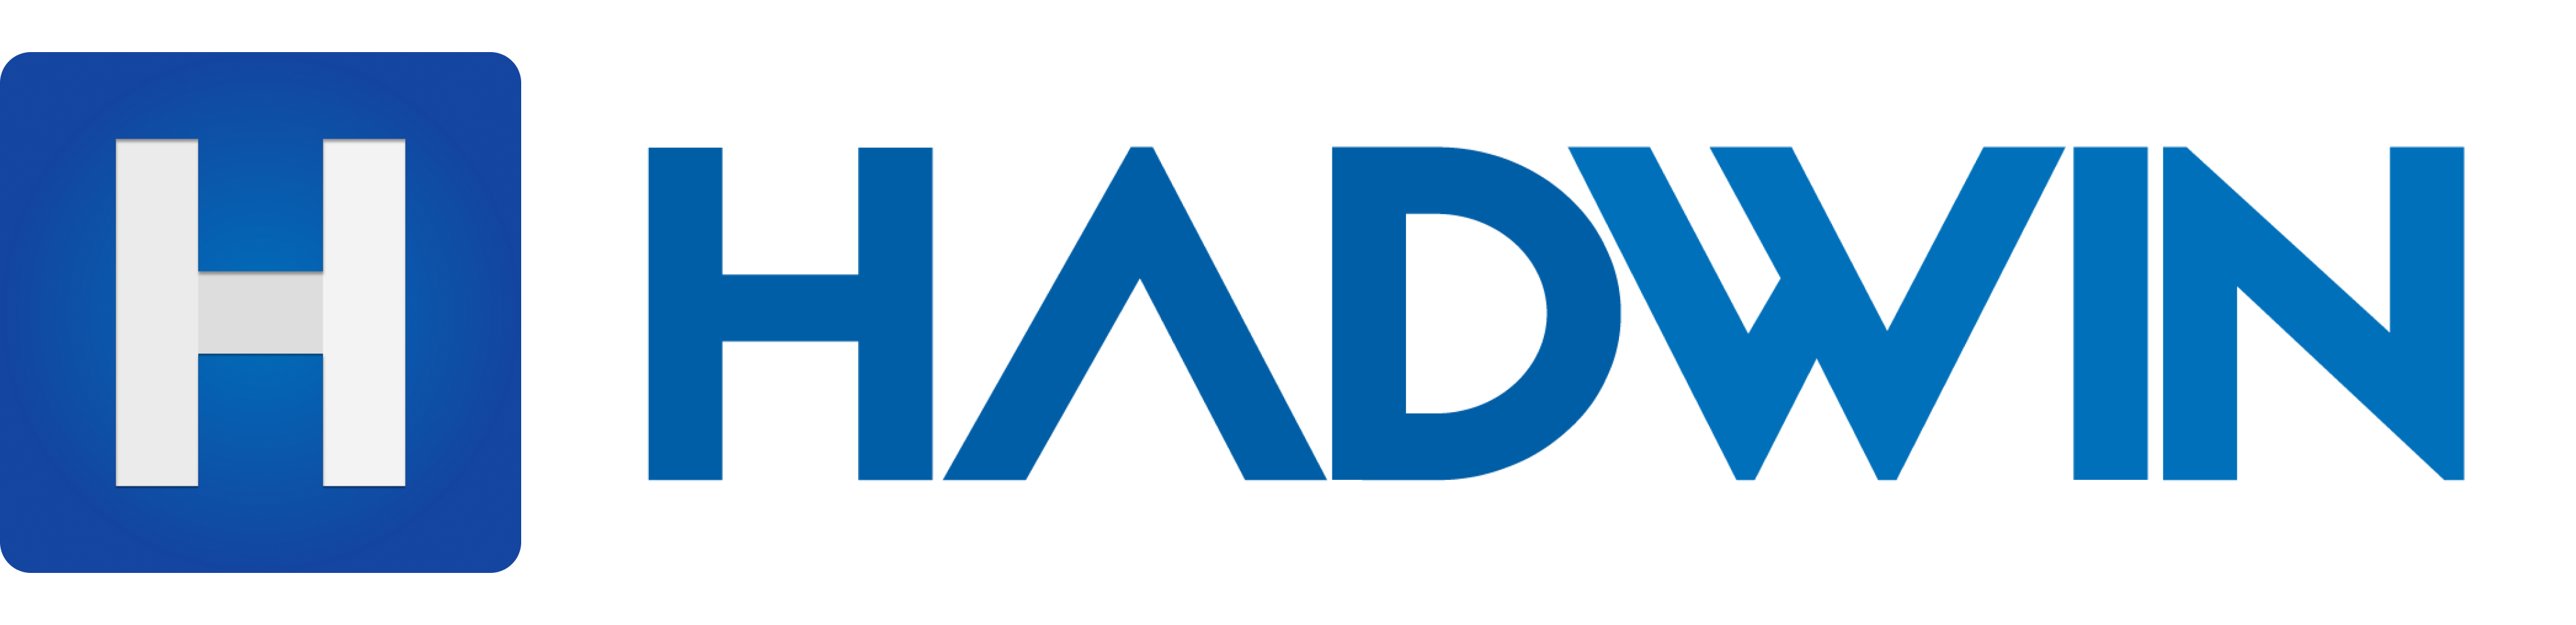 HADWIN logo with name